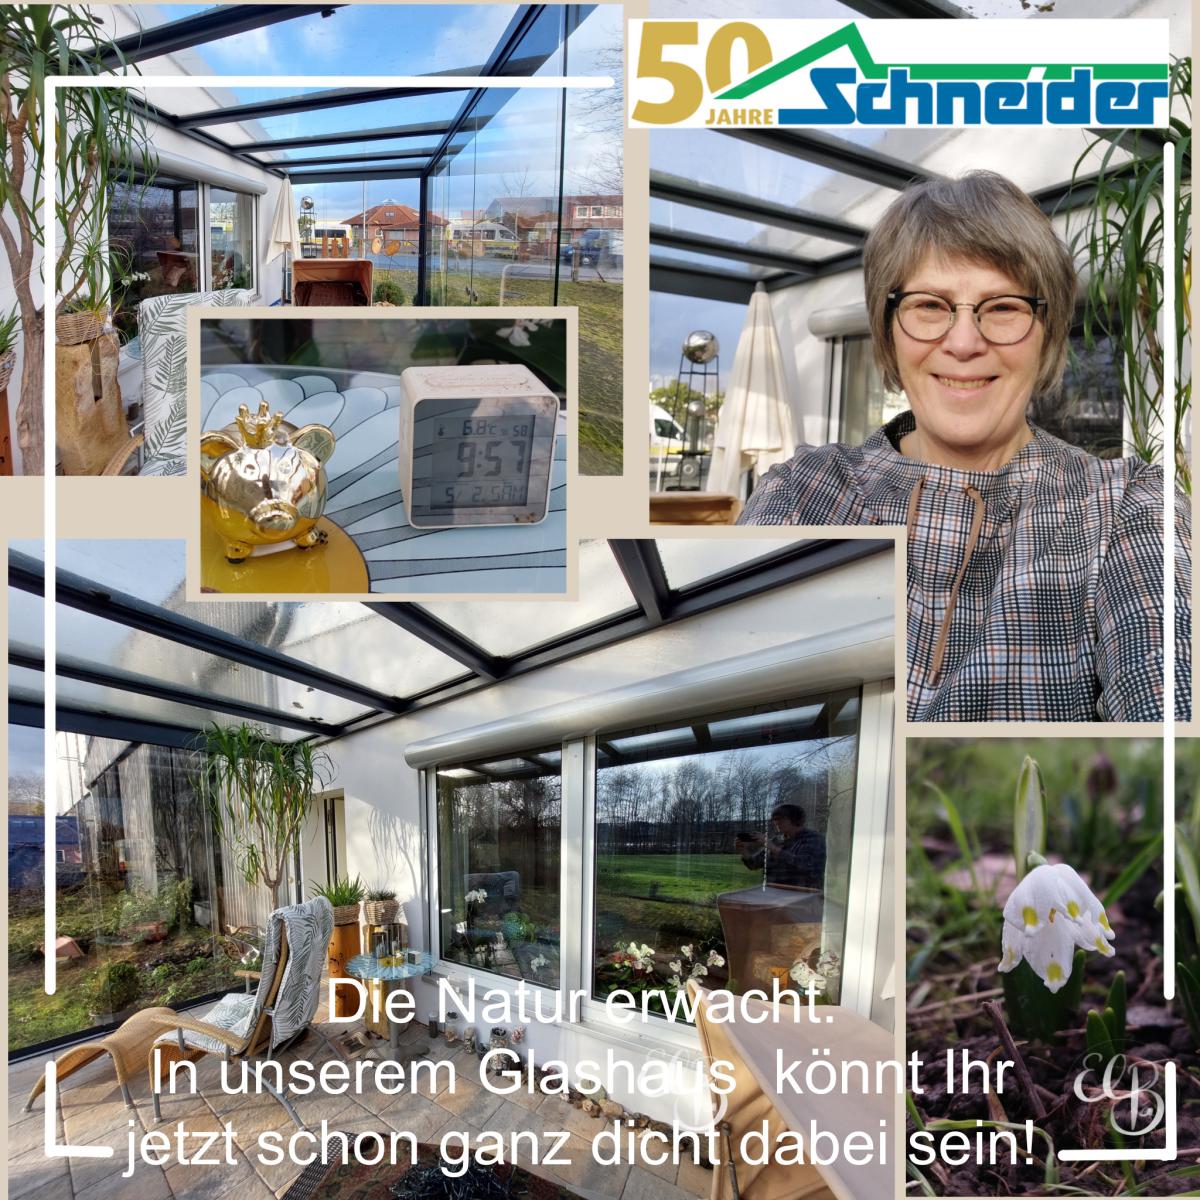 Glashaus mit Rahmenlosen Ganzglas Schiebetüren www.schneider-metallbau.de